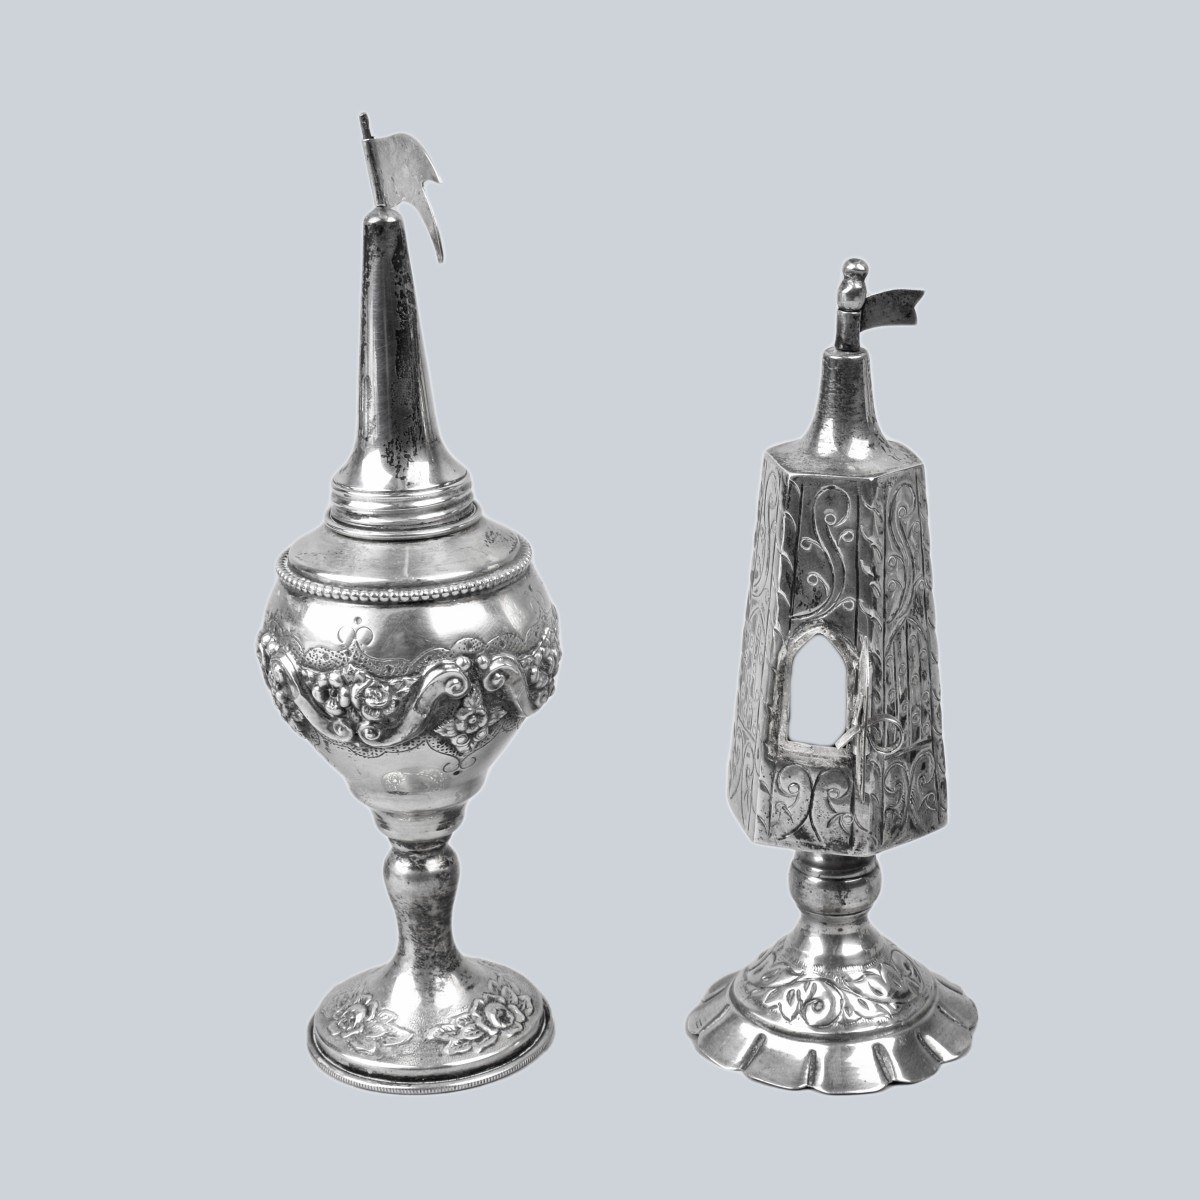 Three Antique Israeli Tableware